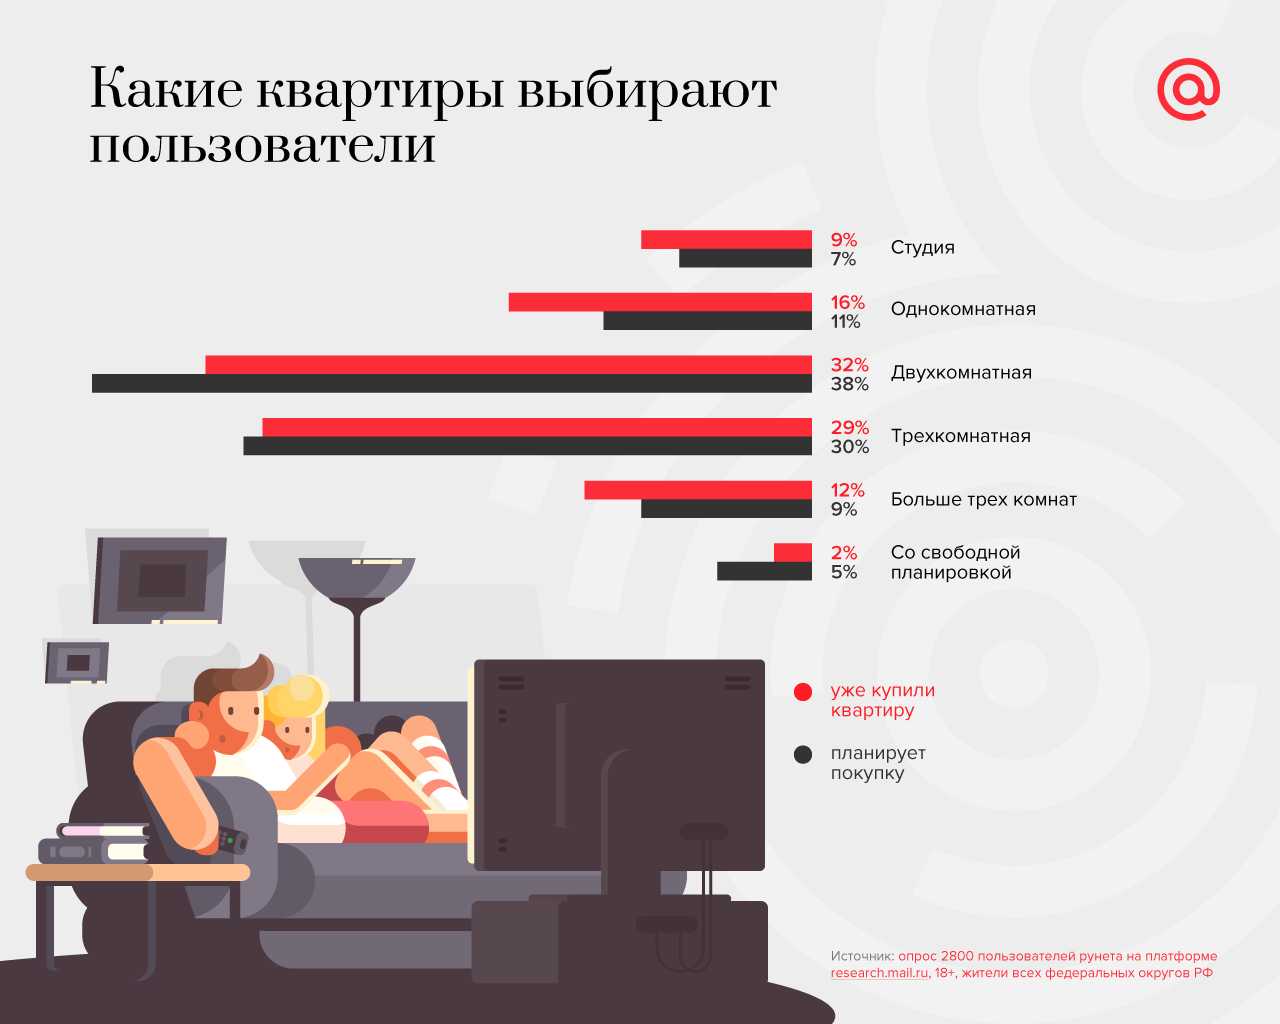 Какие квартиры выбирают пользователи рунета